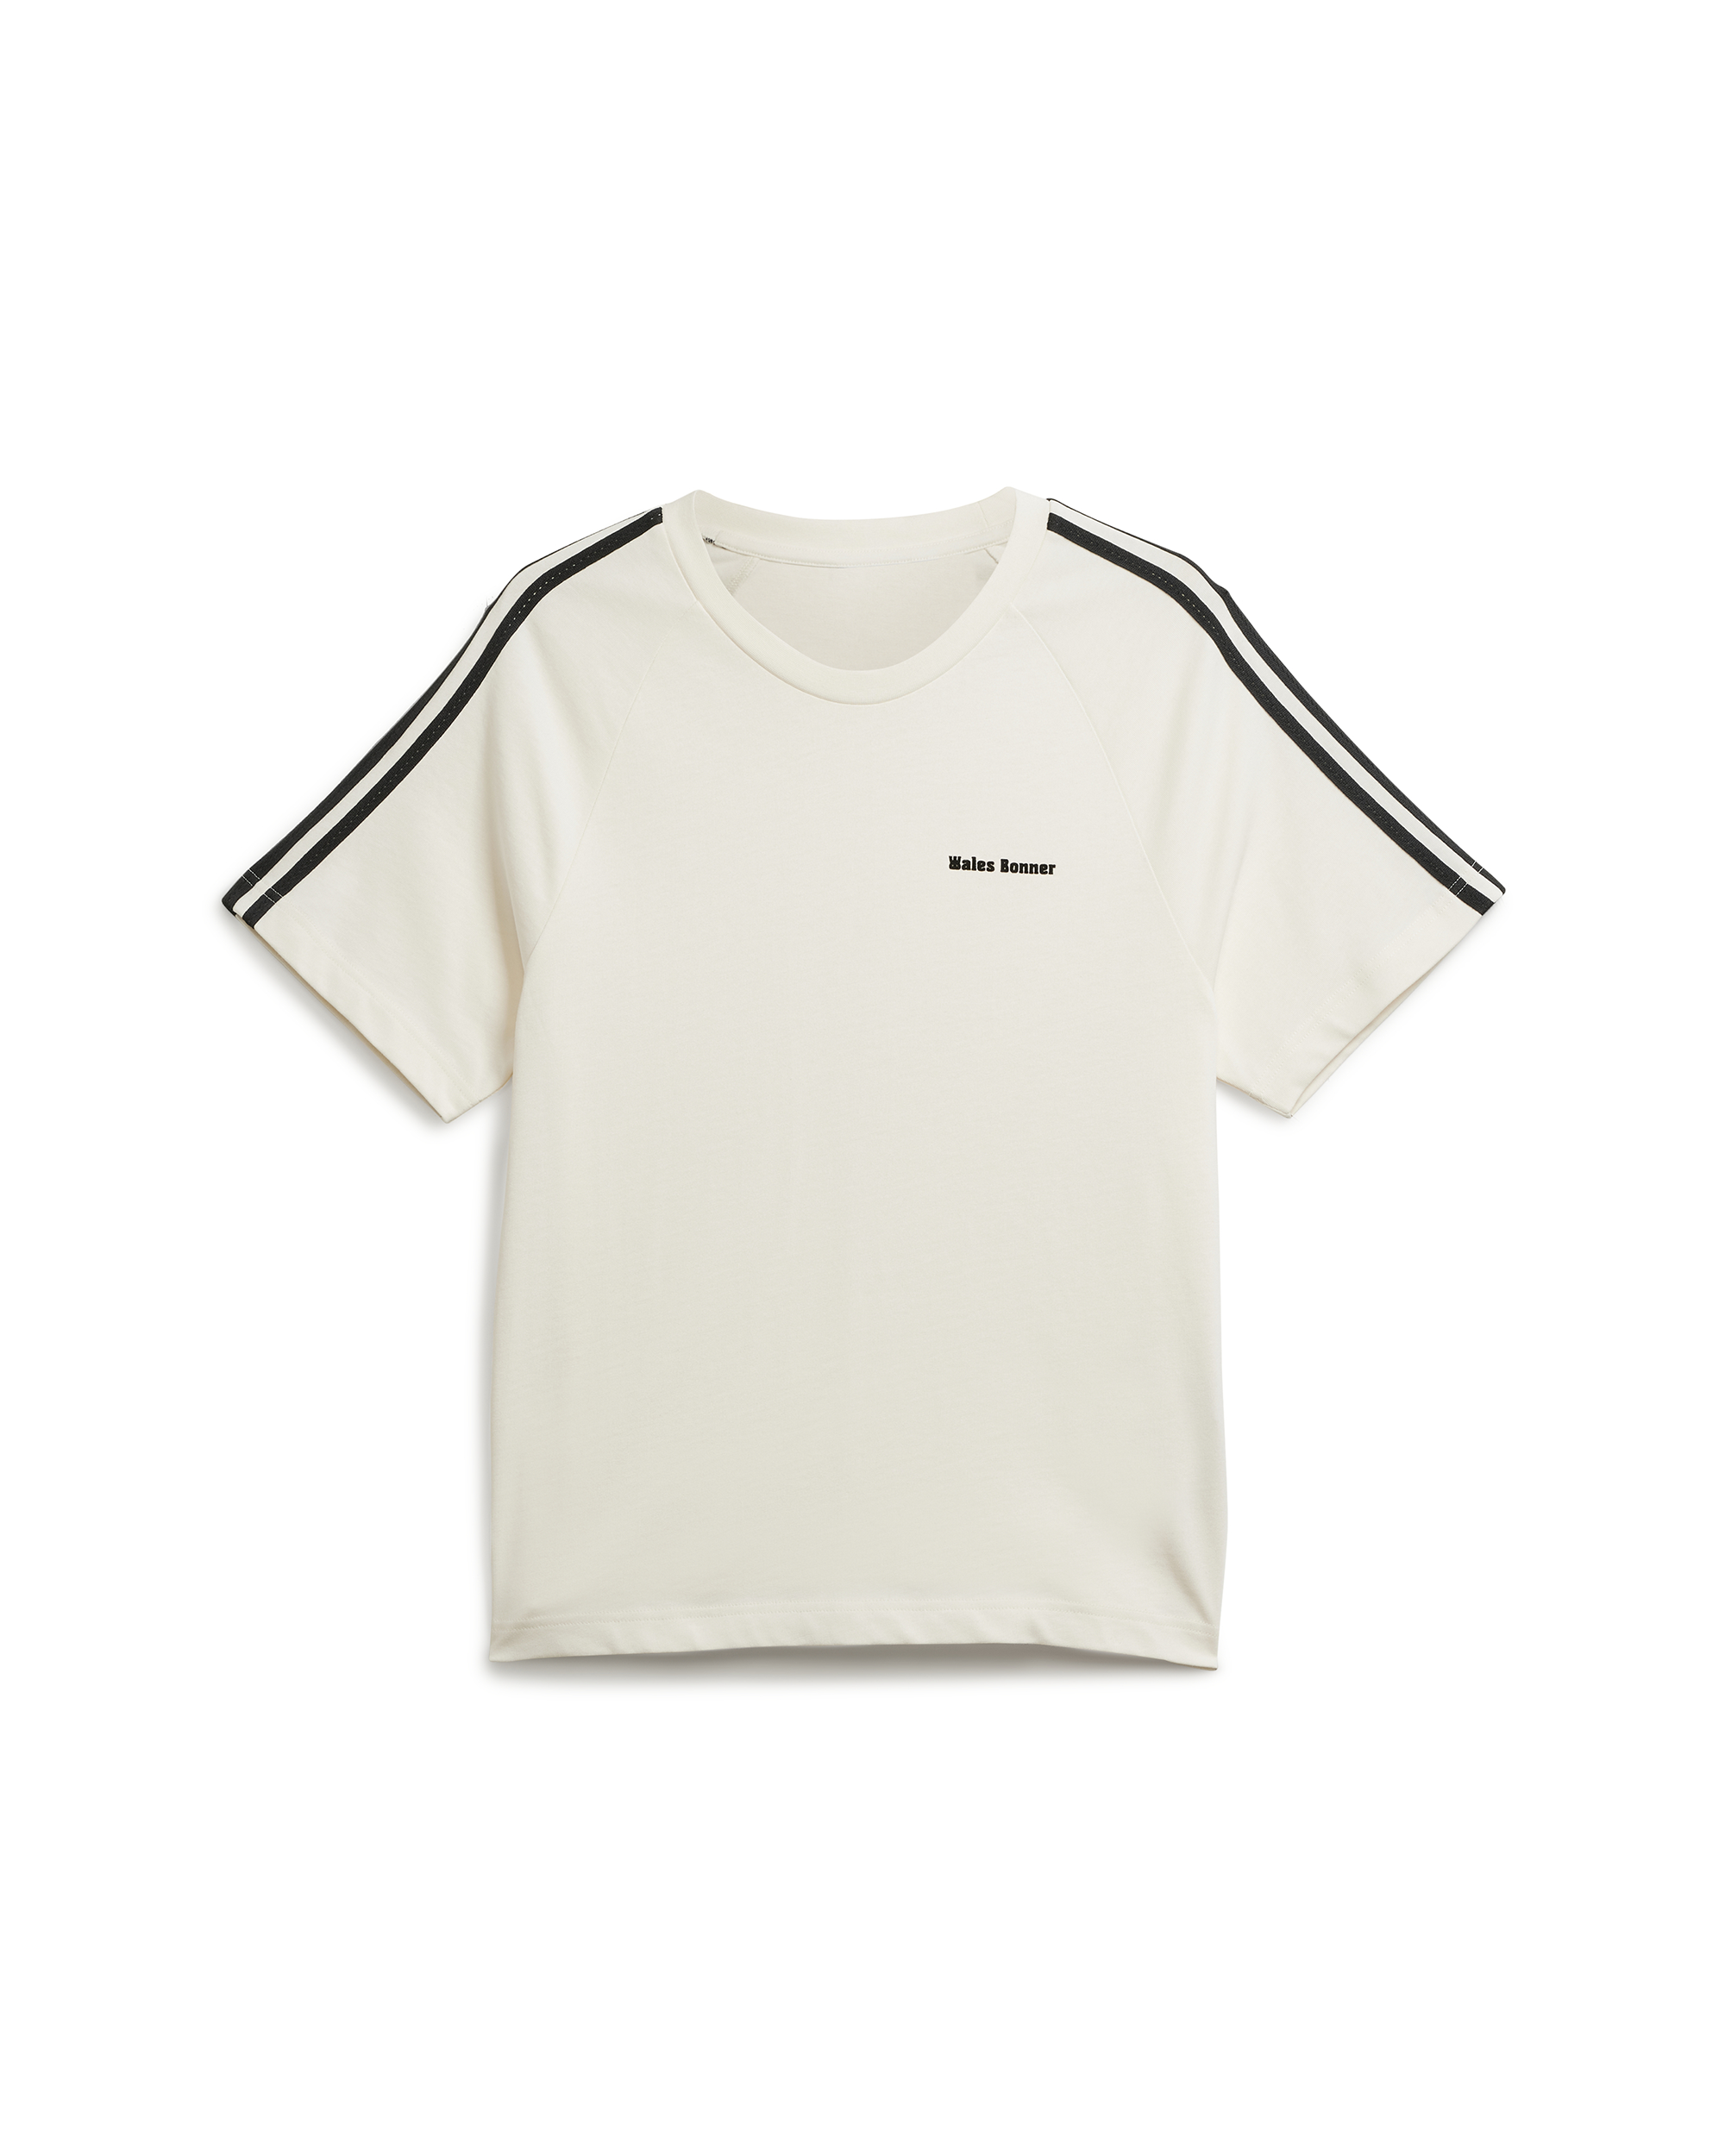 Wales Bonner S/S T-Shirt - Chalk White